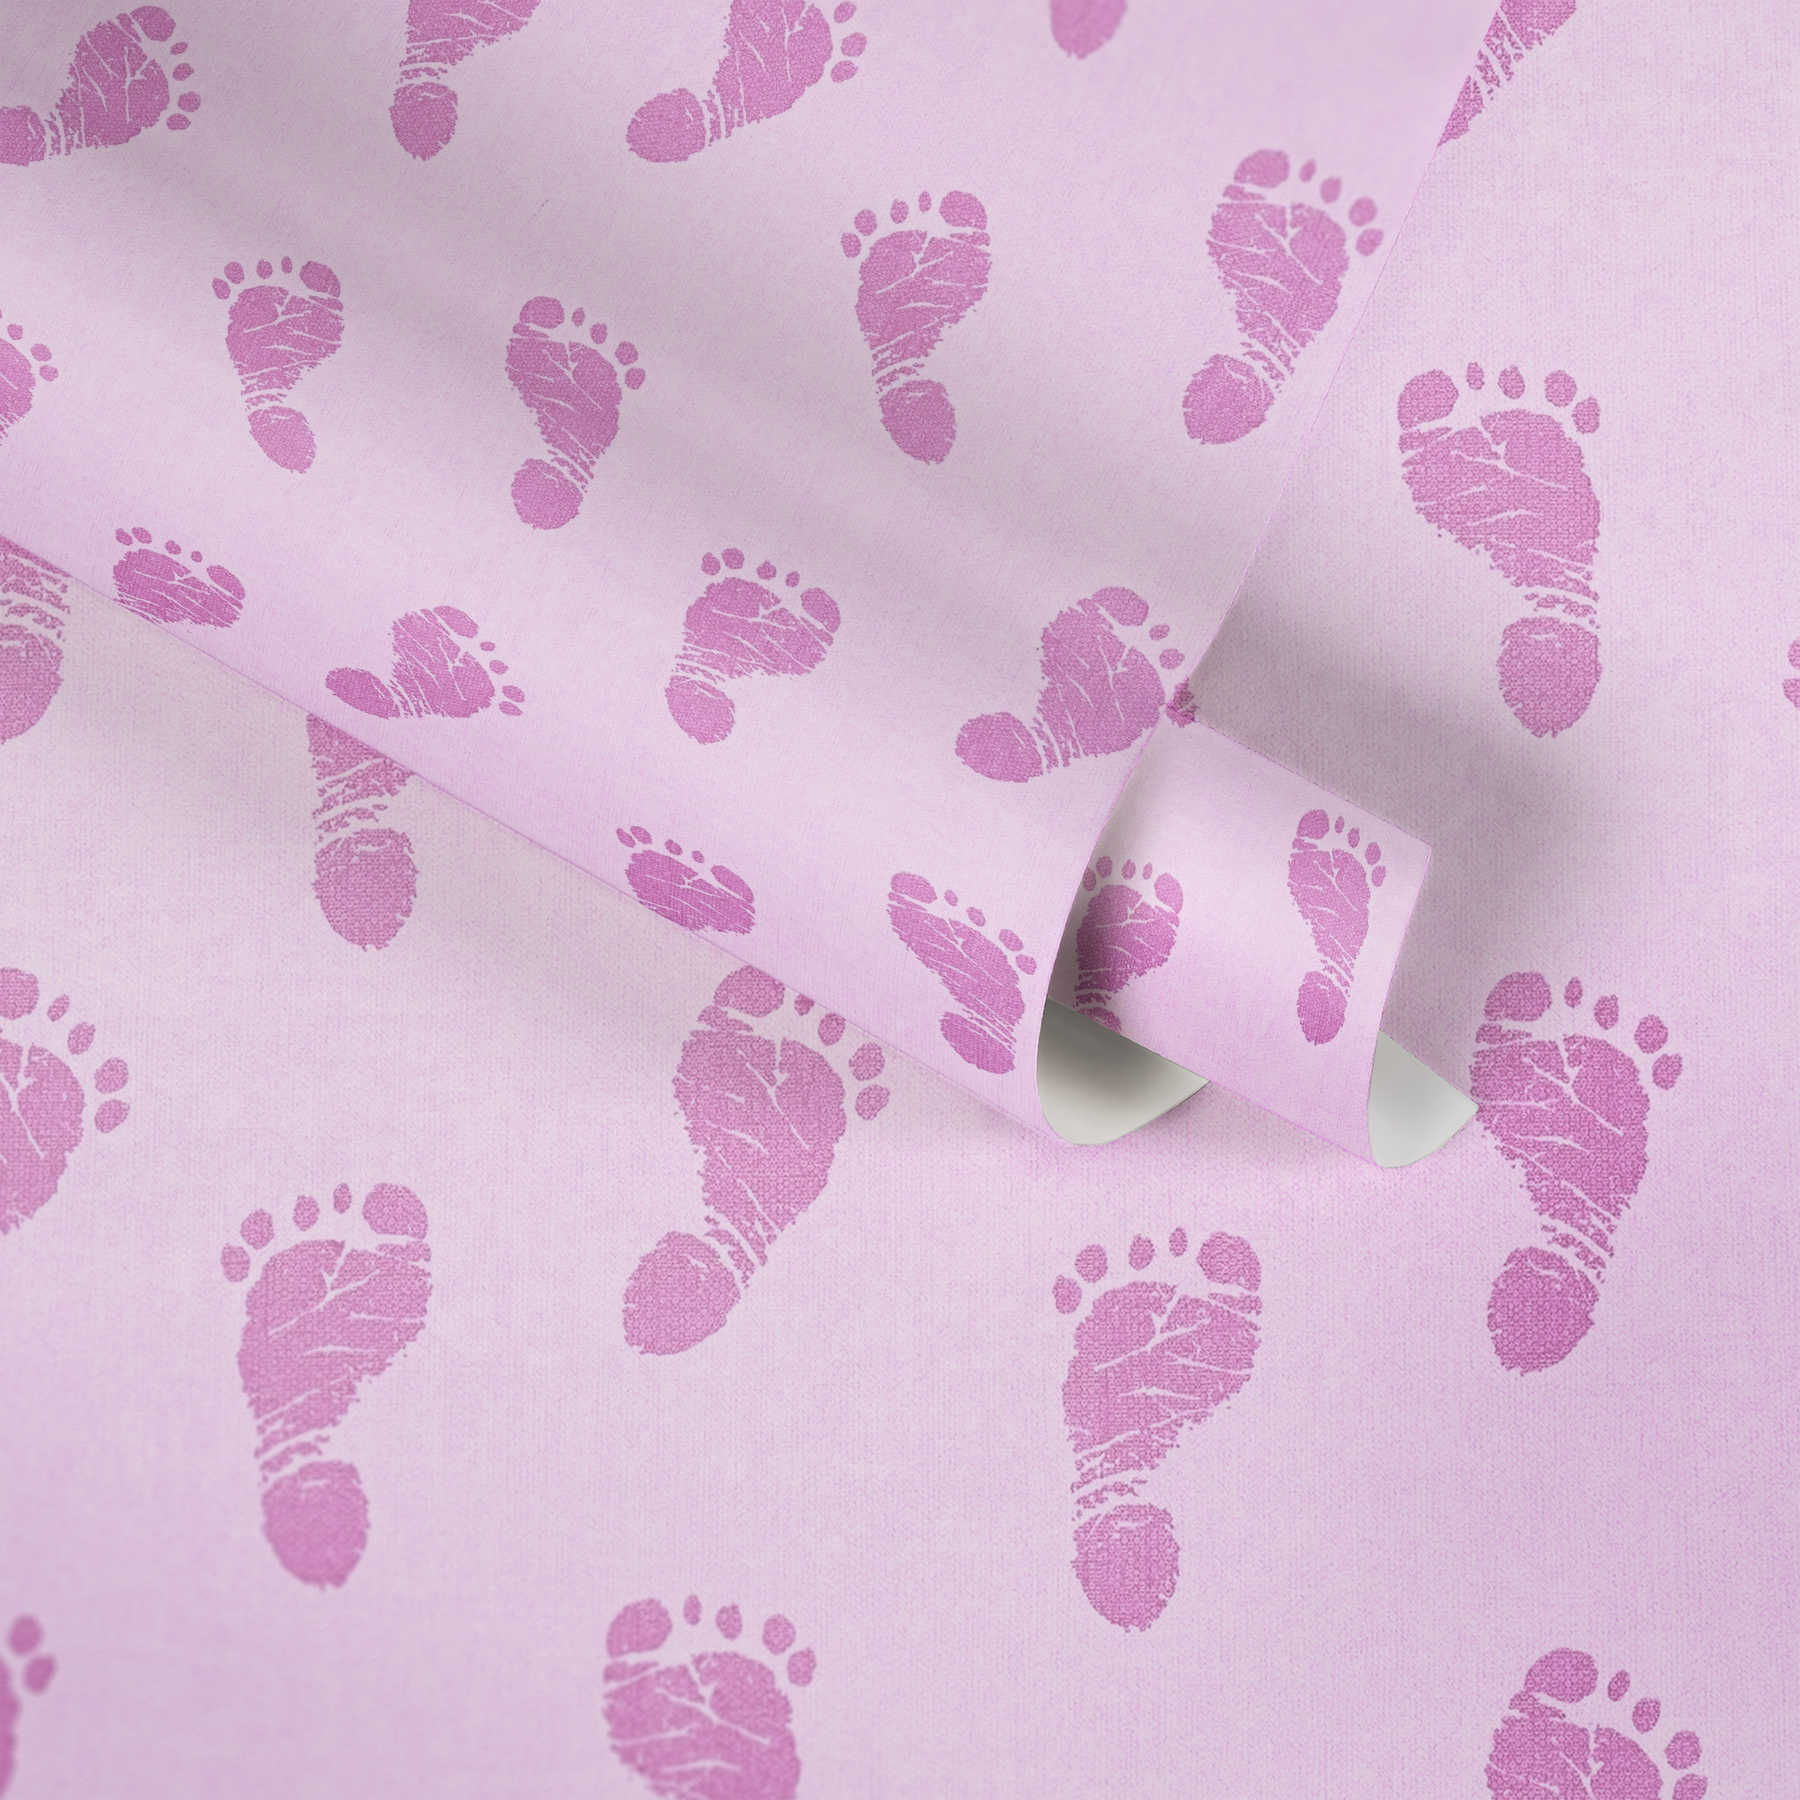             Kinderzimmer Tapete Baby Design für Mädchen – Rosa
        